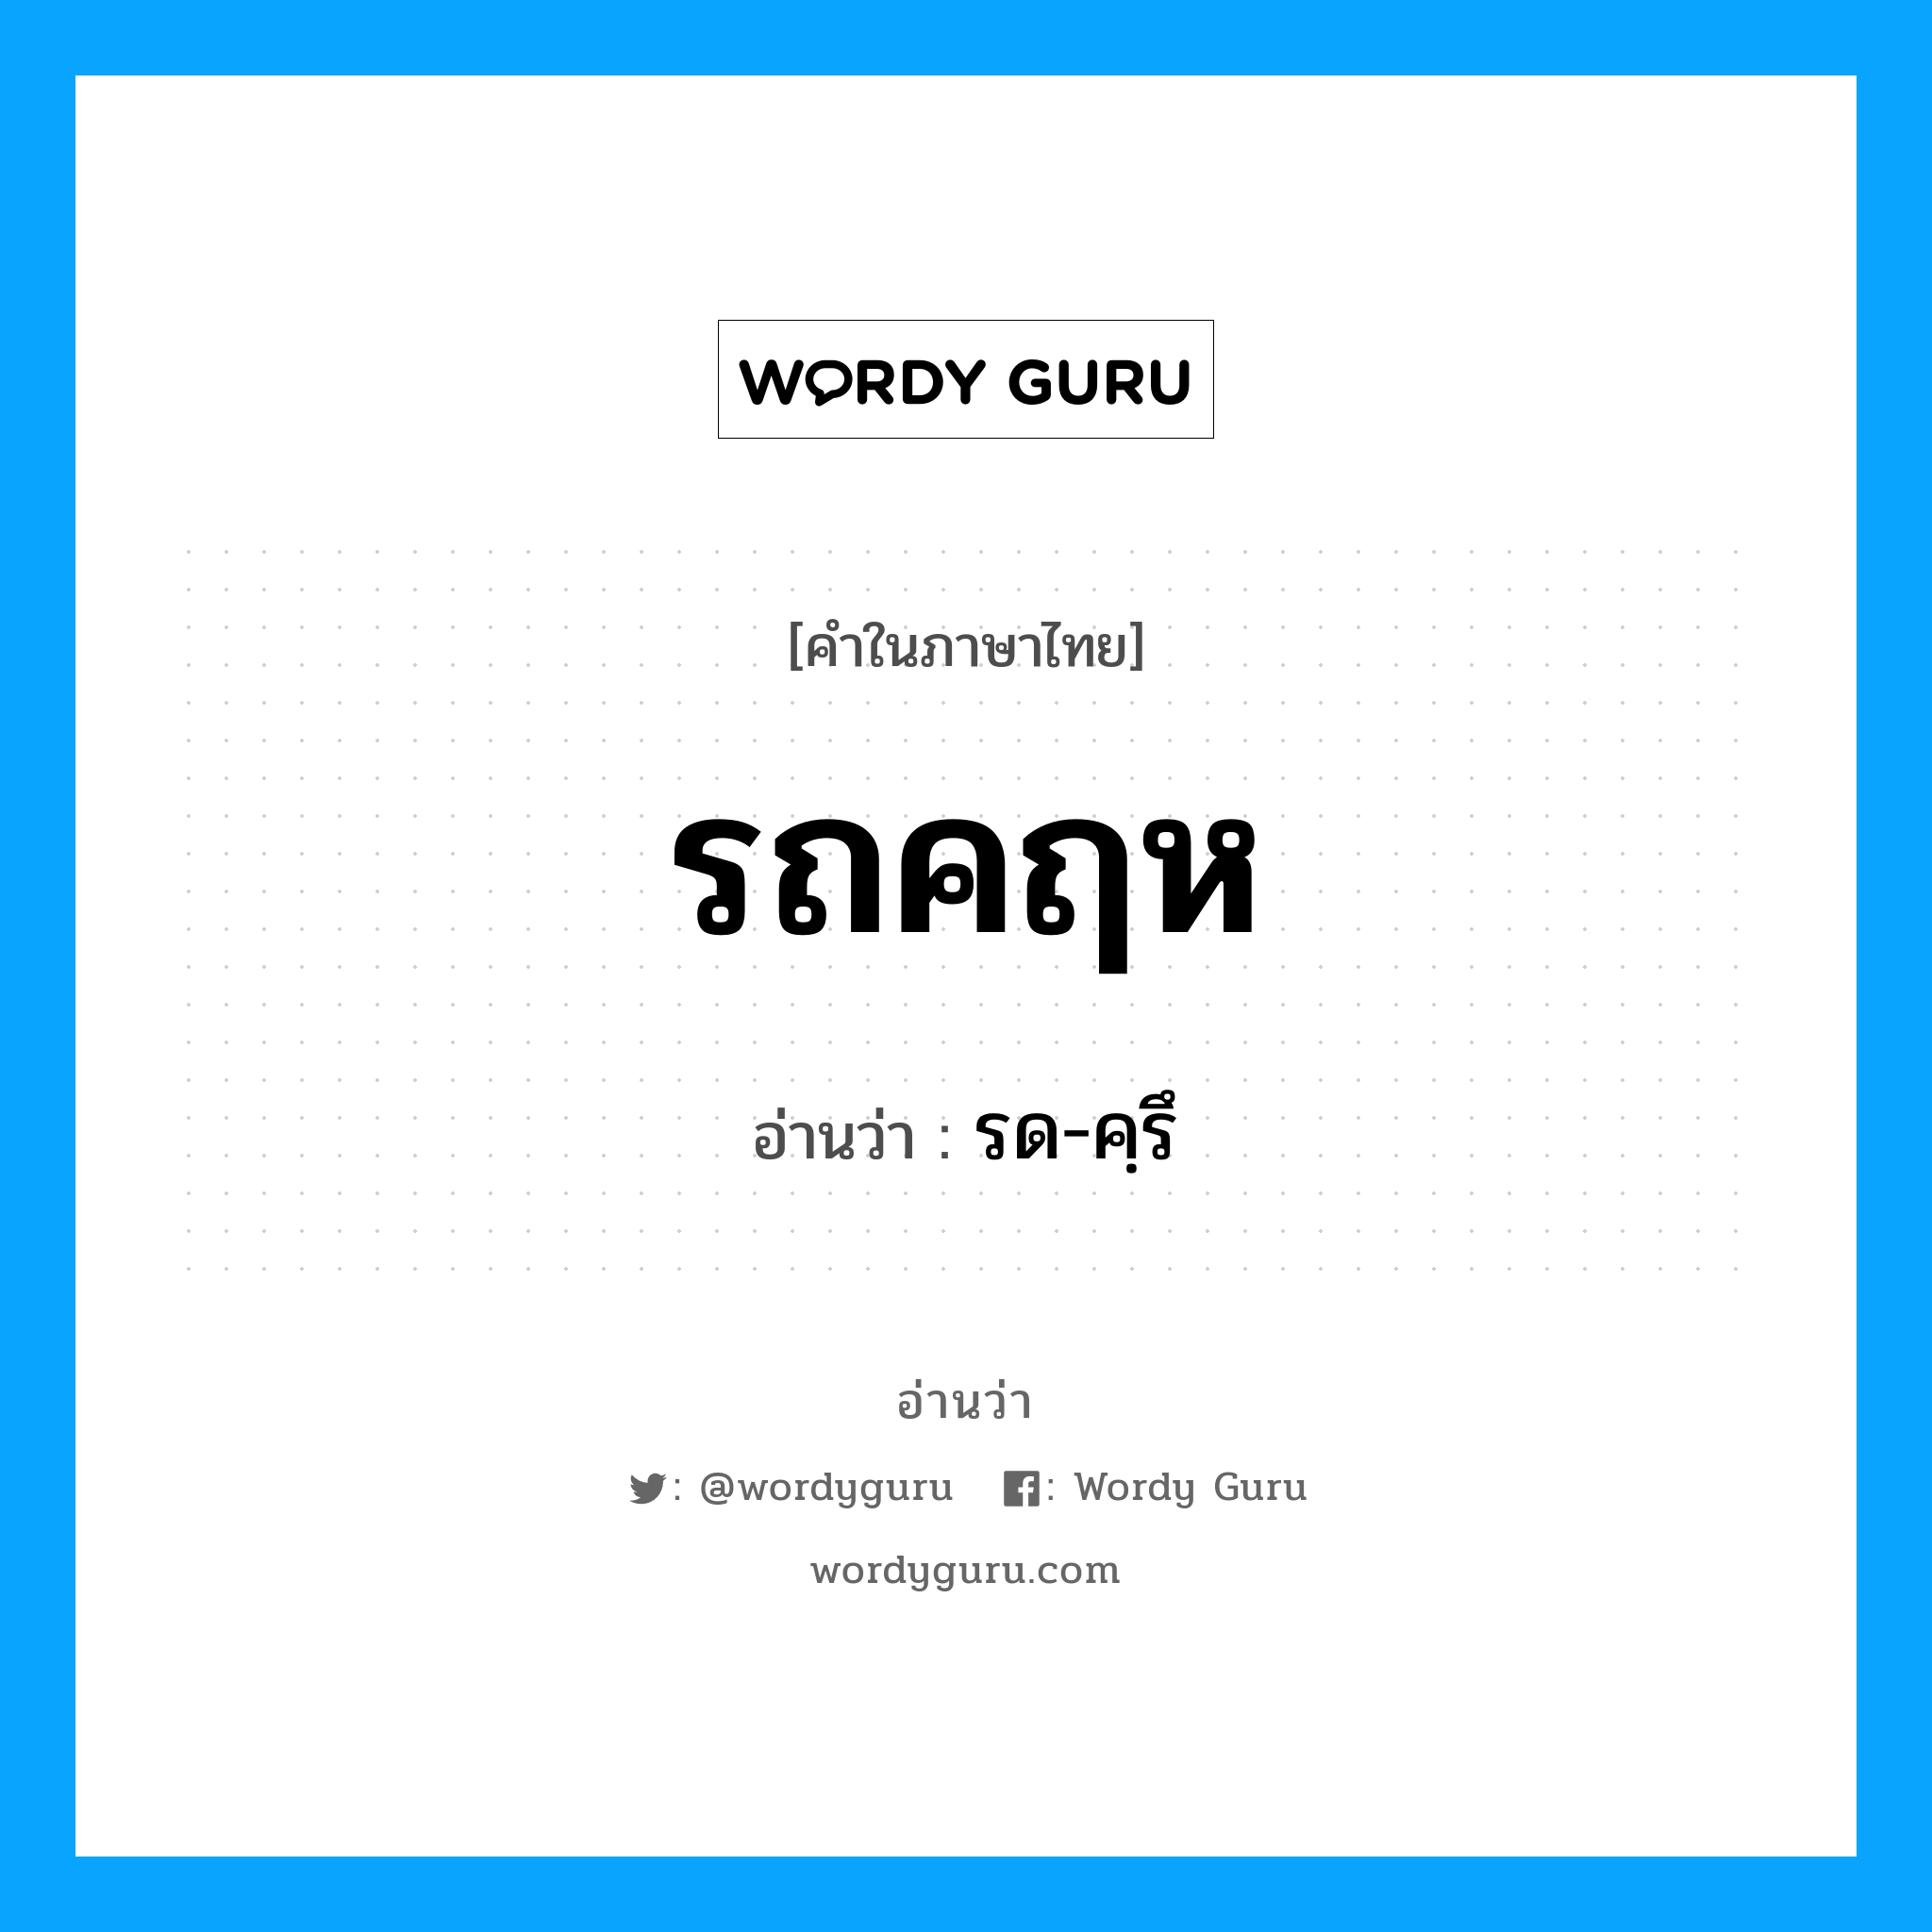 รด-คฺรึ เป็นคำอ่านของคำไหน?, คำในภาษาไทย รด-คฺรึ อ่านว่า รถคฤห